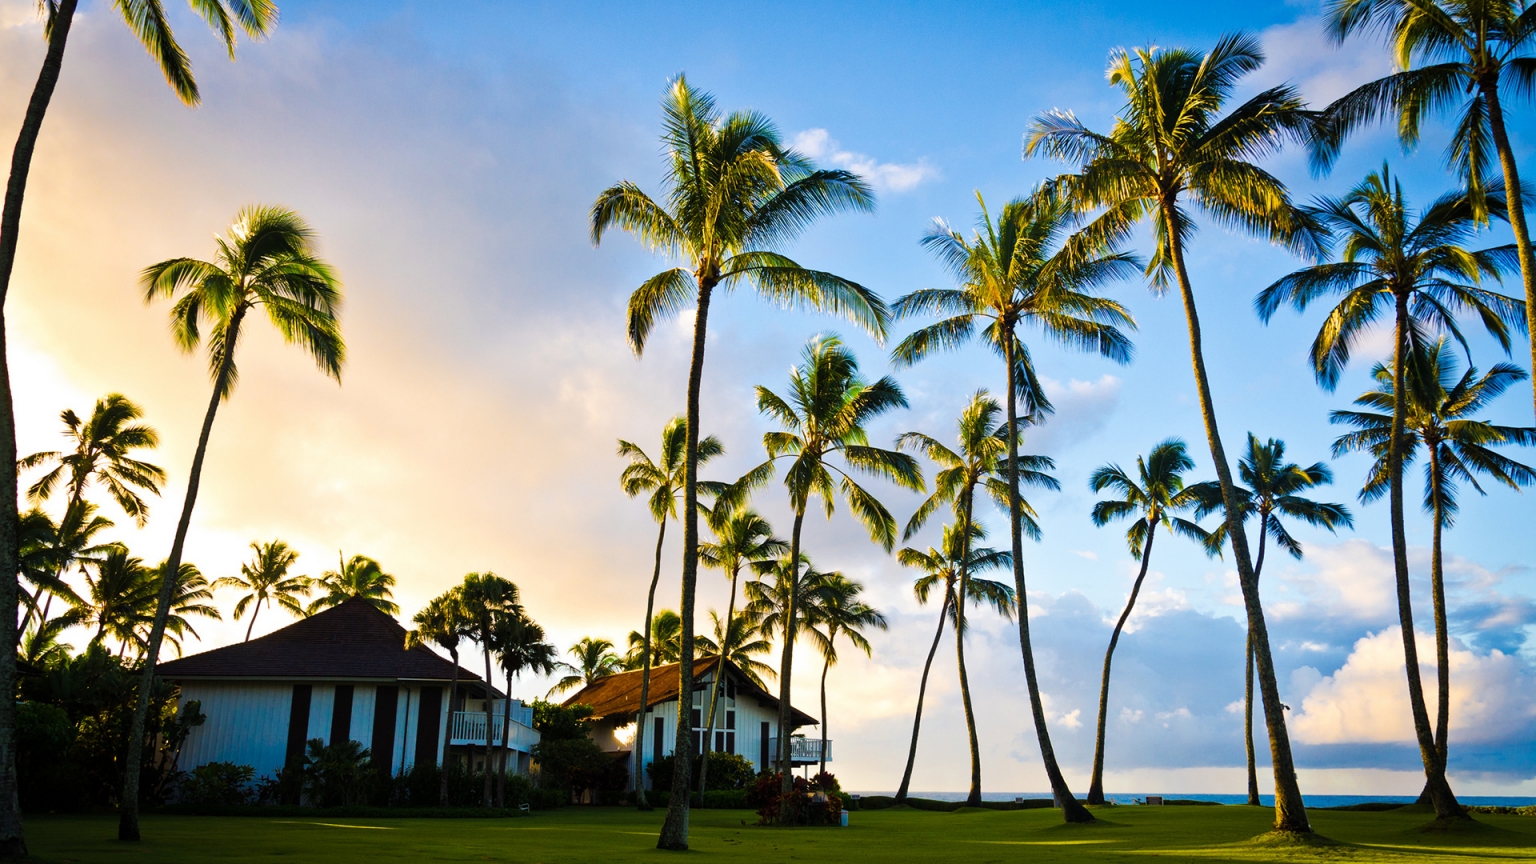 Hawaii Beach Houses for 1536 x 864 HDTV resolution